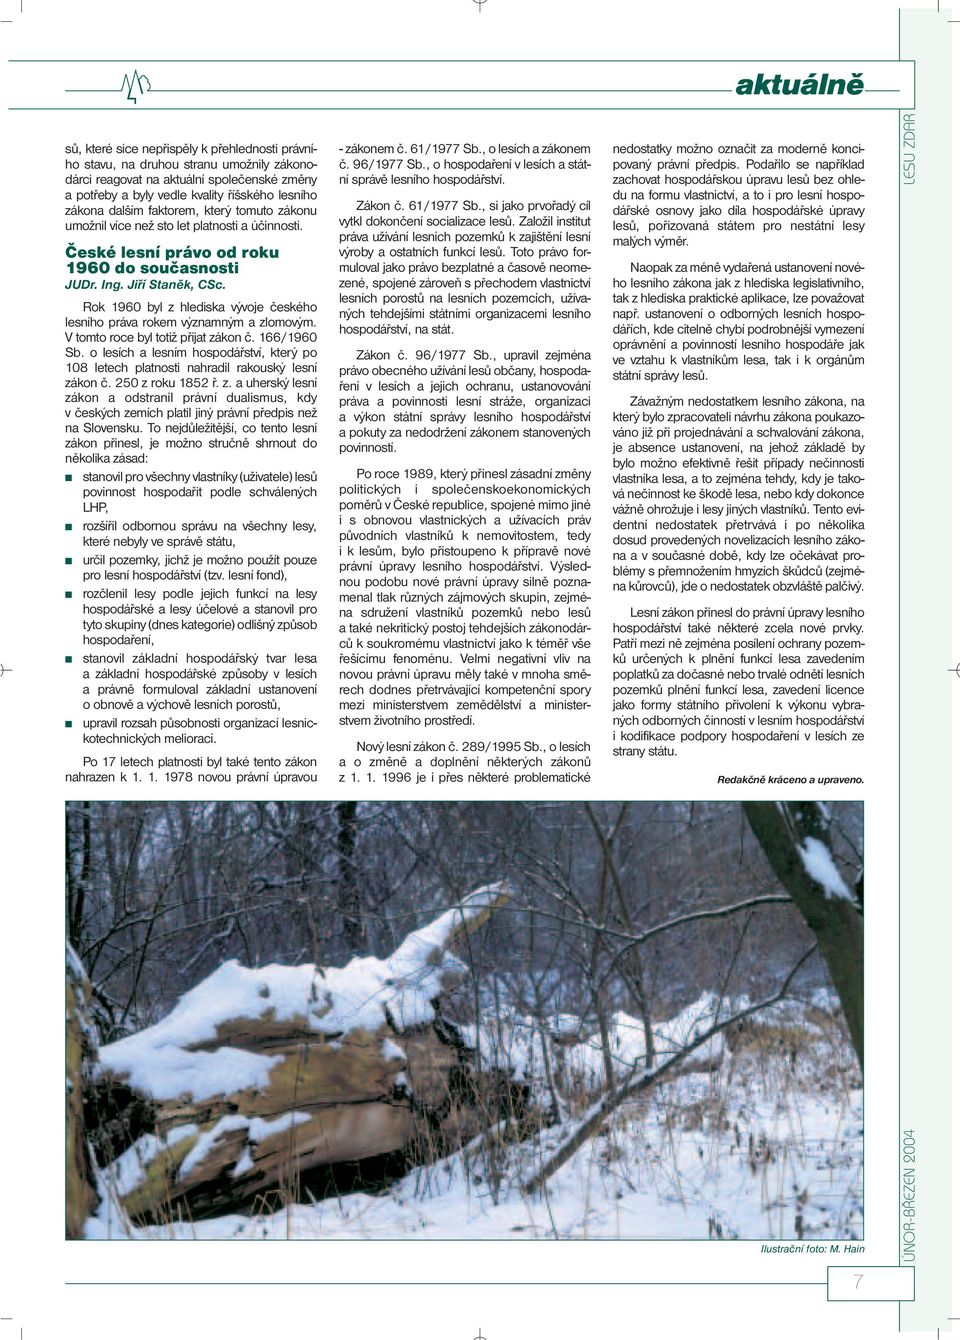 Rok 1960 byl z hlediska vývoje českého lesního práva rokem významným a zlomovým. V tomto roce byl totiž přijat zákon č. 166/1960 Sb.